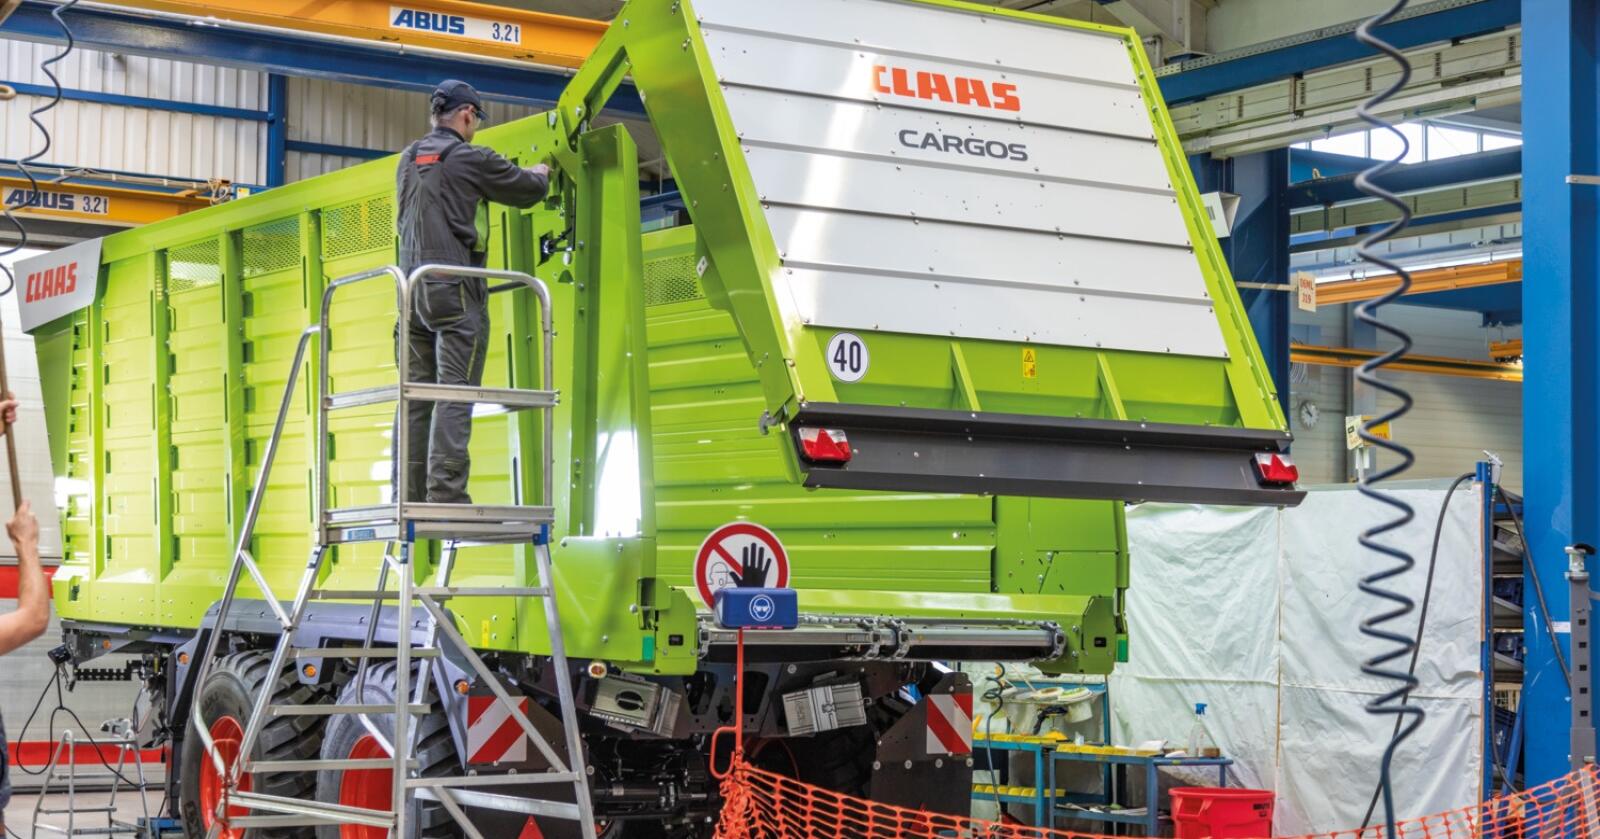 Avsluttes: Claas avslutter produksjonen av Cargos inneværende år, og vil bruke plassen i fabrikken på andre produkter.